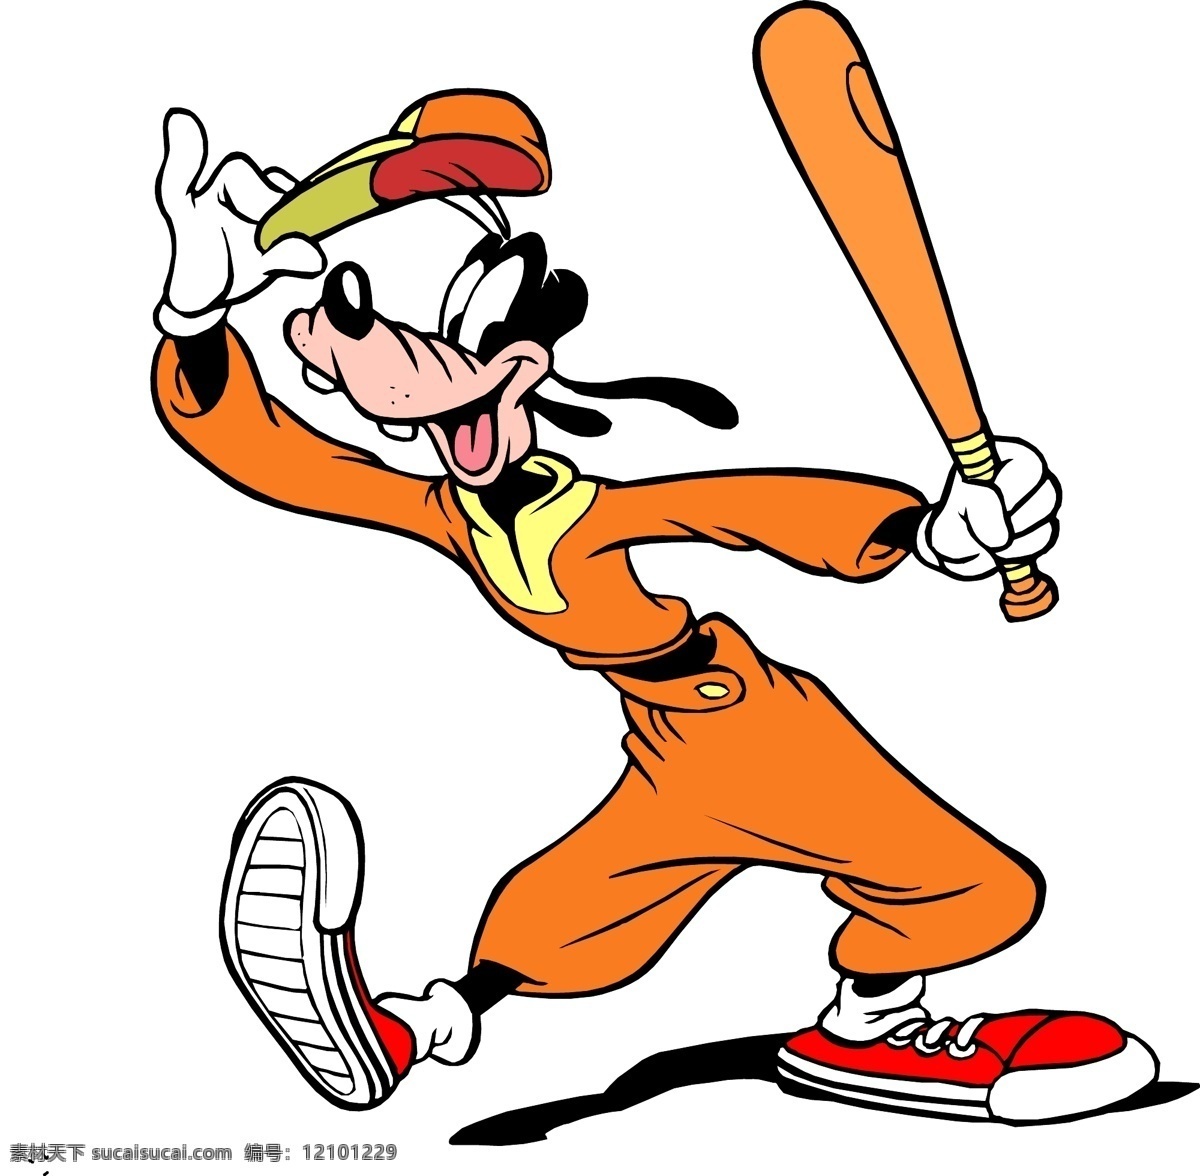 米妮 迪士尼 迪斯尼 米老鼠 矢量 卡通设计 老鼠 卡通 儿童 漫画 线描 学生本本 唐老鸭 哈巴狗 卡通类 动漫动画 动漫人物